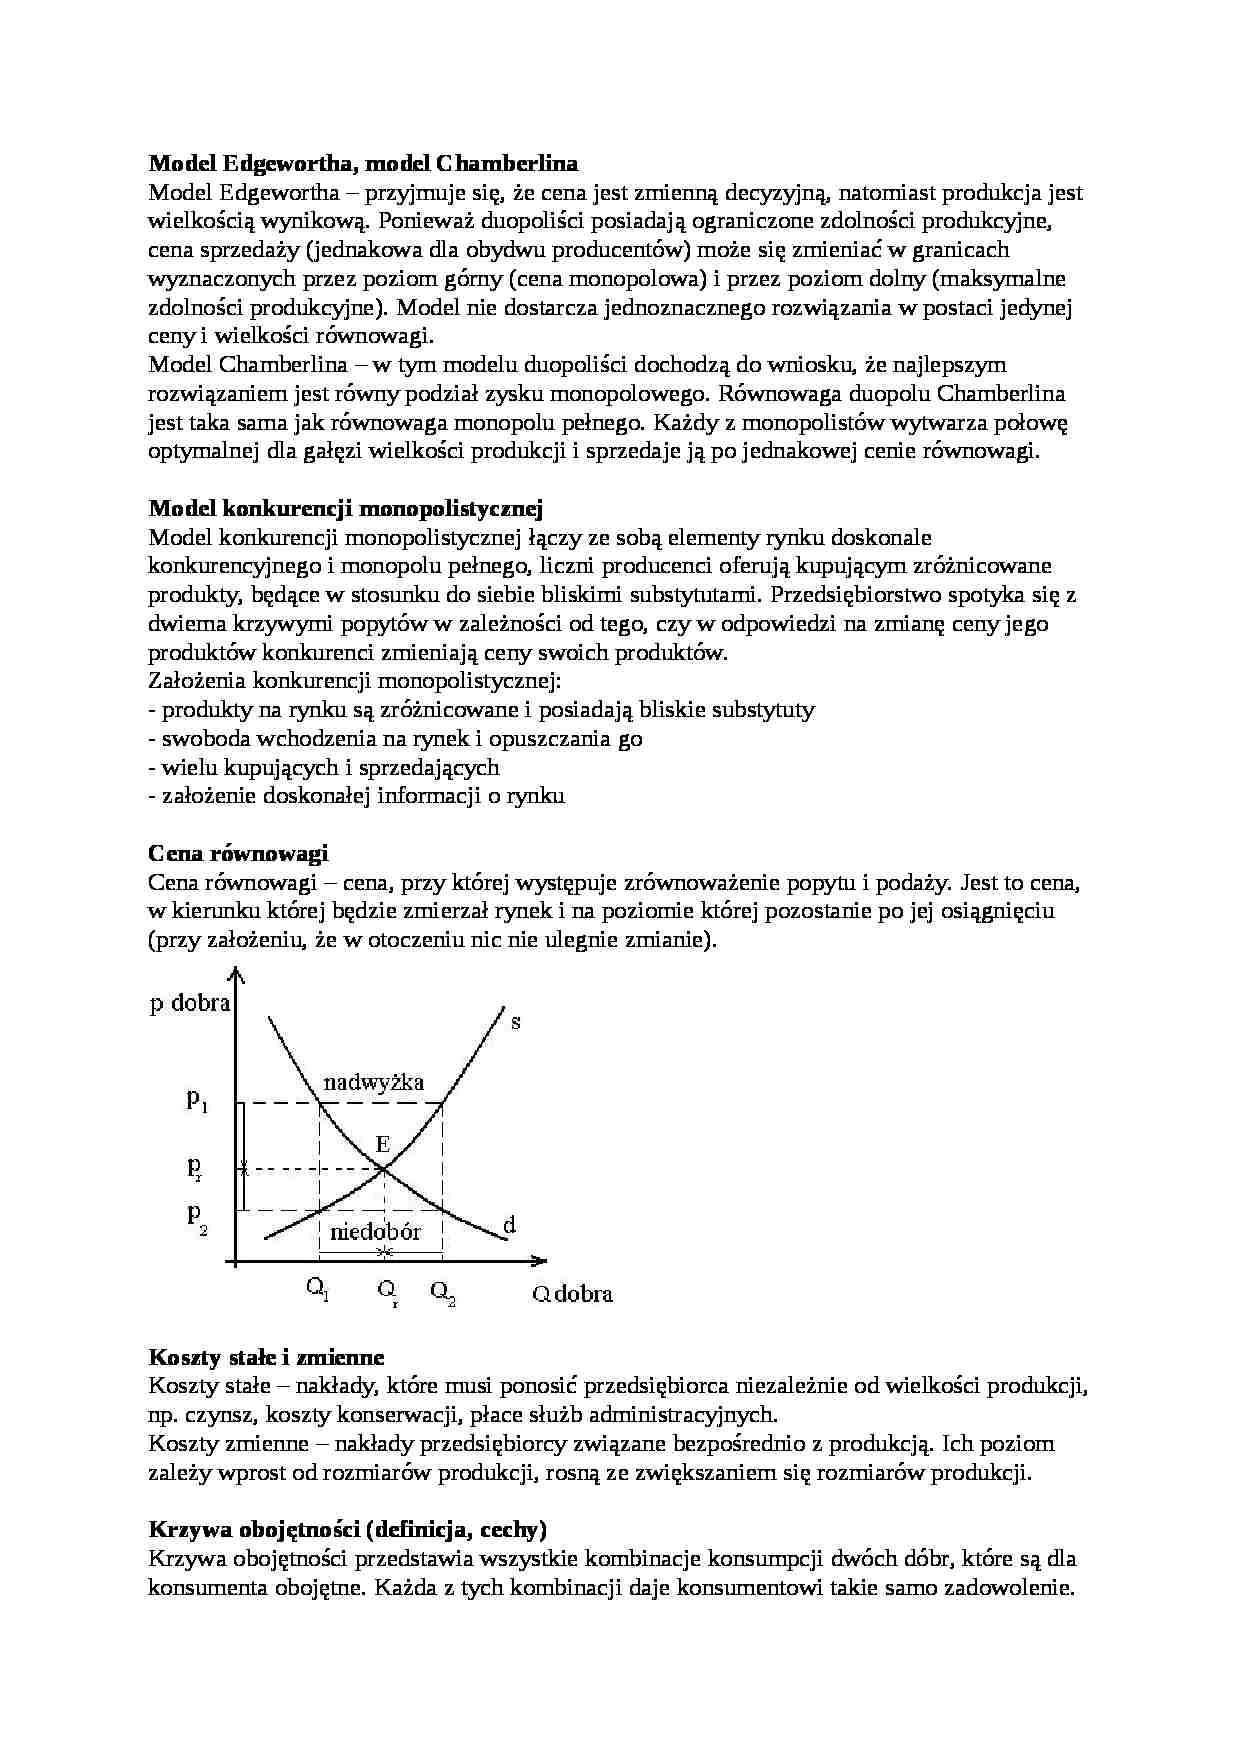 Mikroekonomia - Opracowanie tez na egzamin zestaw 2 - strona 1